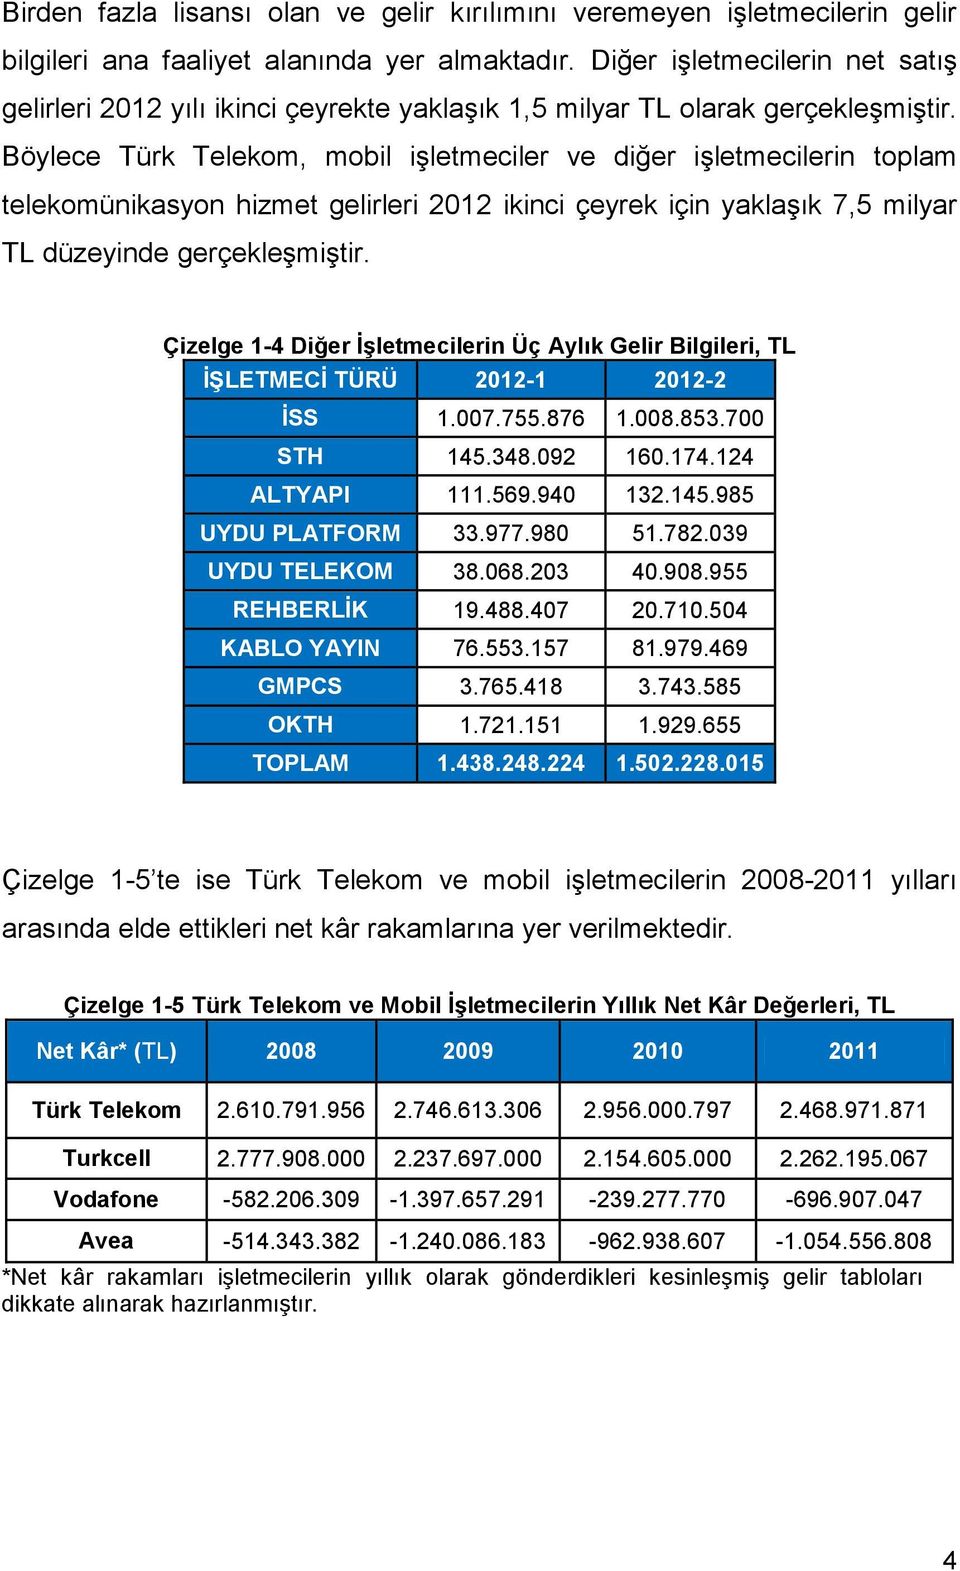 Böylece Türk Telekom, mobil iģletmeciler ve diğer iģletmecilerin toplam telekomünikasyon hizmet gelirleri 212 ikinci çeyrek için yaklaģık 7,5 milyar TL düzeyinde gerçekleģmiģtir.